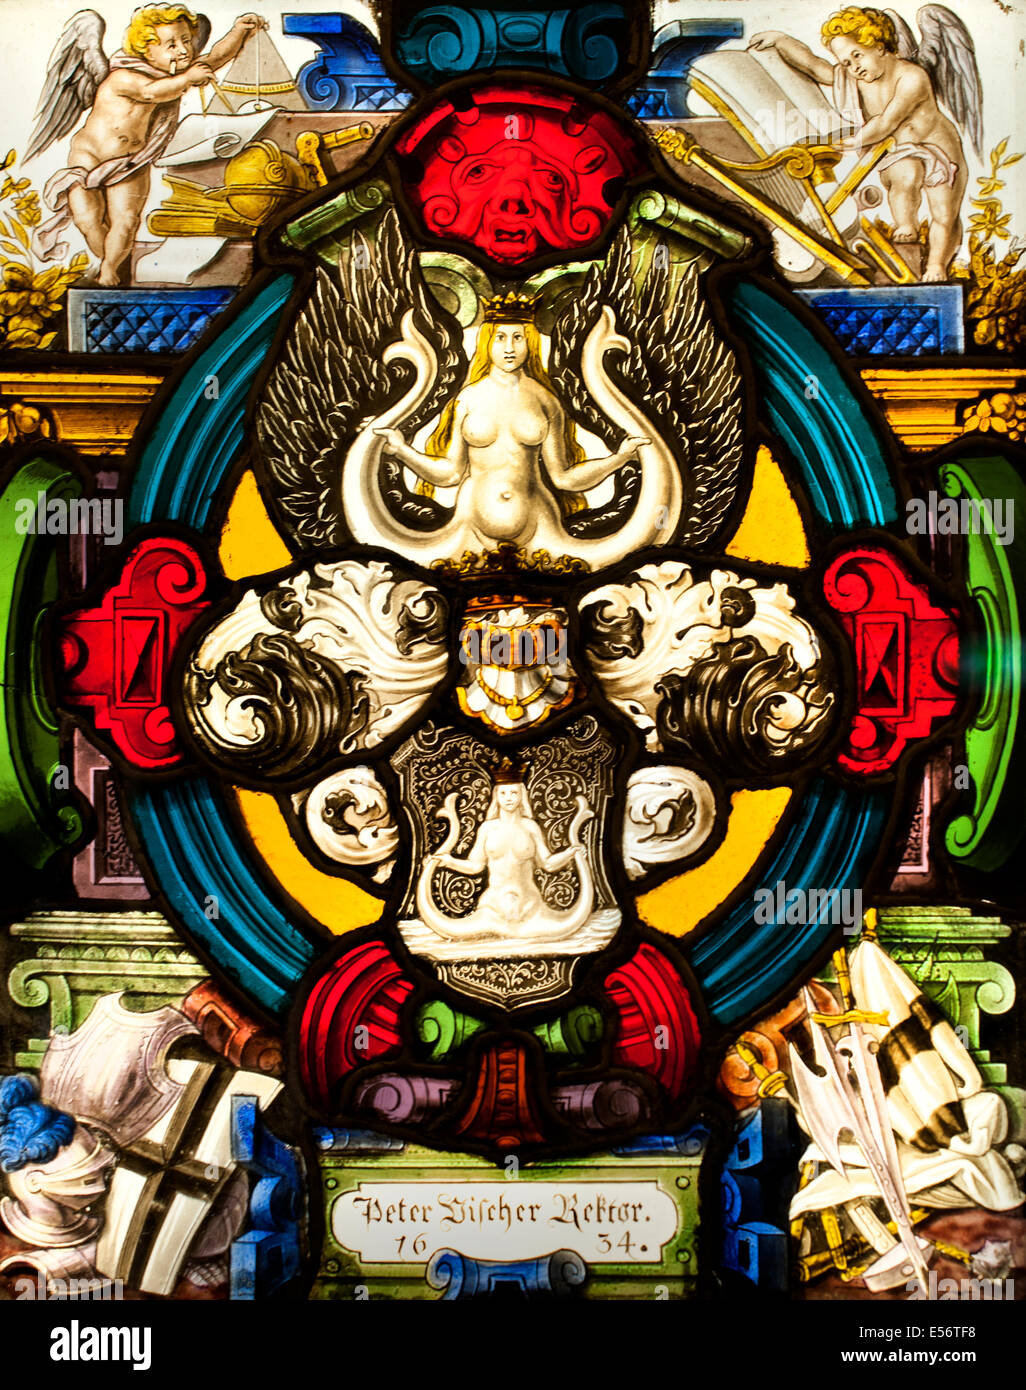 Coat of arms of the rector Peter Vischer leaded window Swiss Switzerland Stock Photo